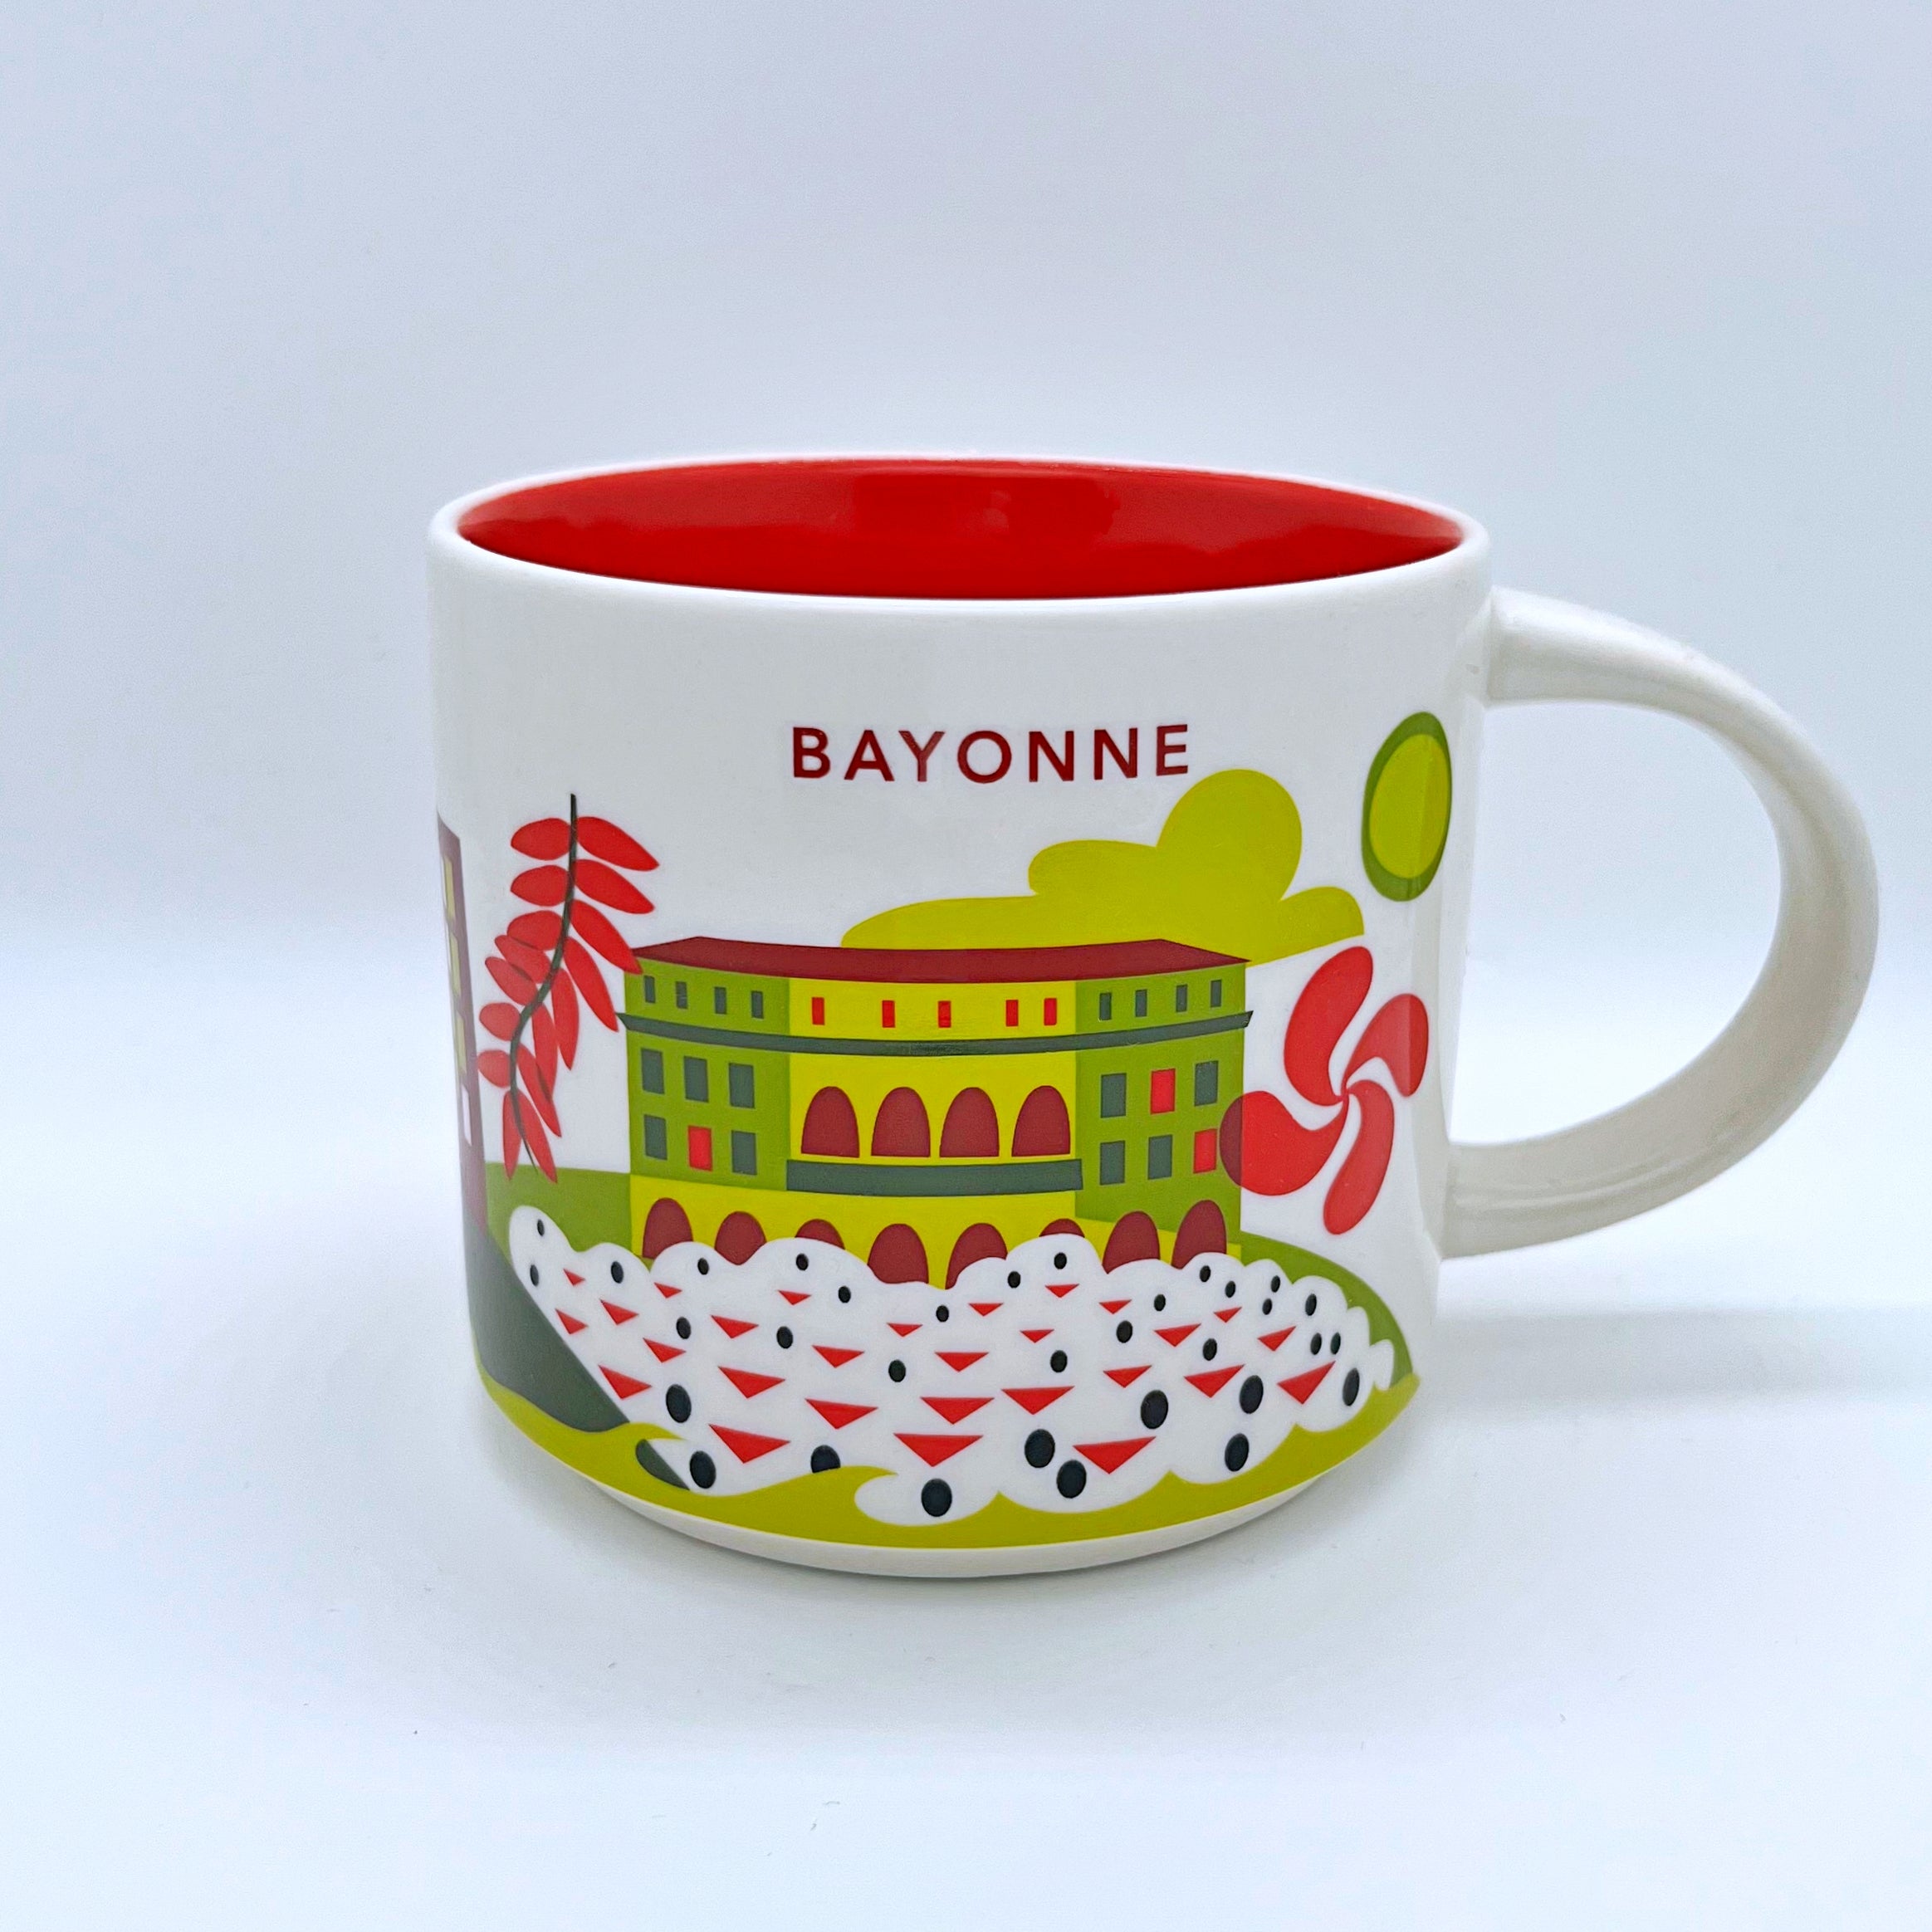 Kaffee Tee und Cappuccino Tasse von Starbucks mit gemalten Bildern aus der Stadt Bayonne